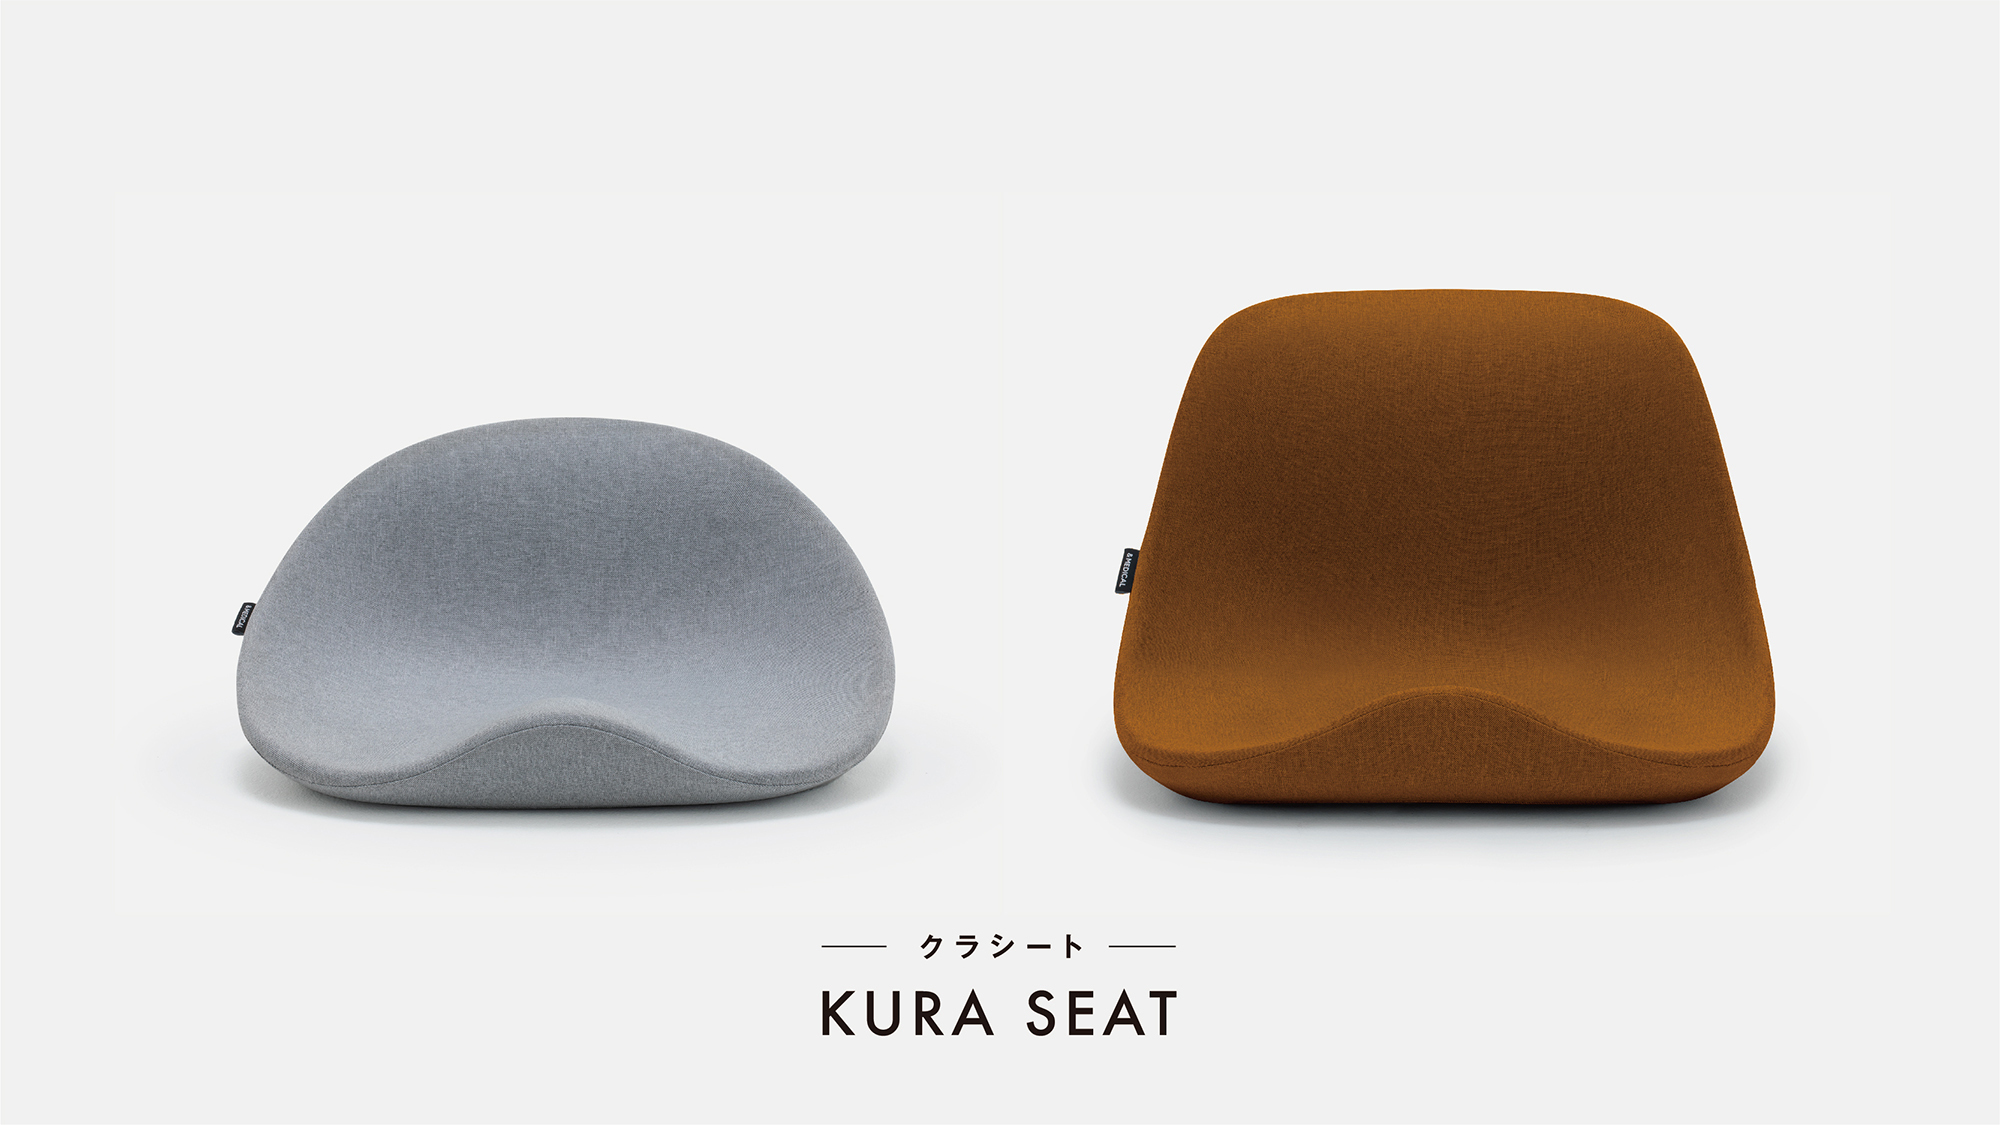 KURA SEAT\n鞍から発想した姿勢サポートシートKURA SEAT